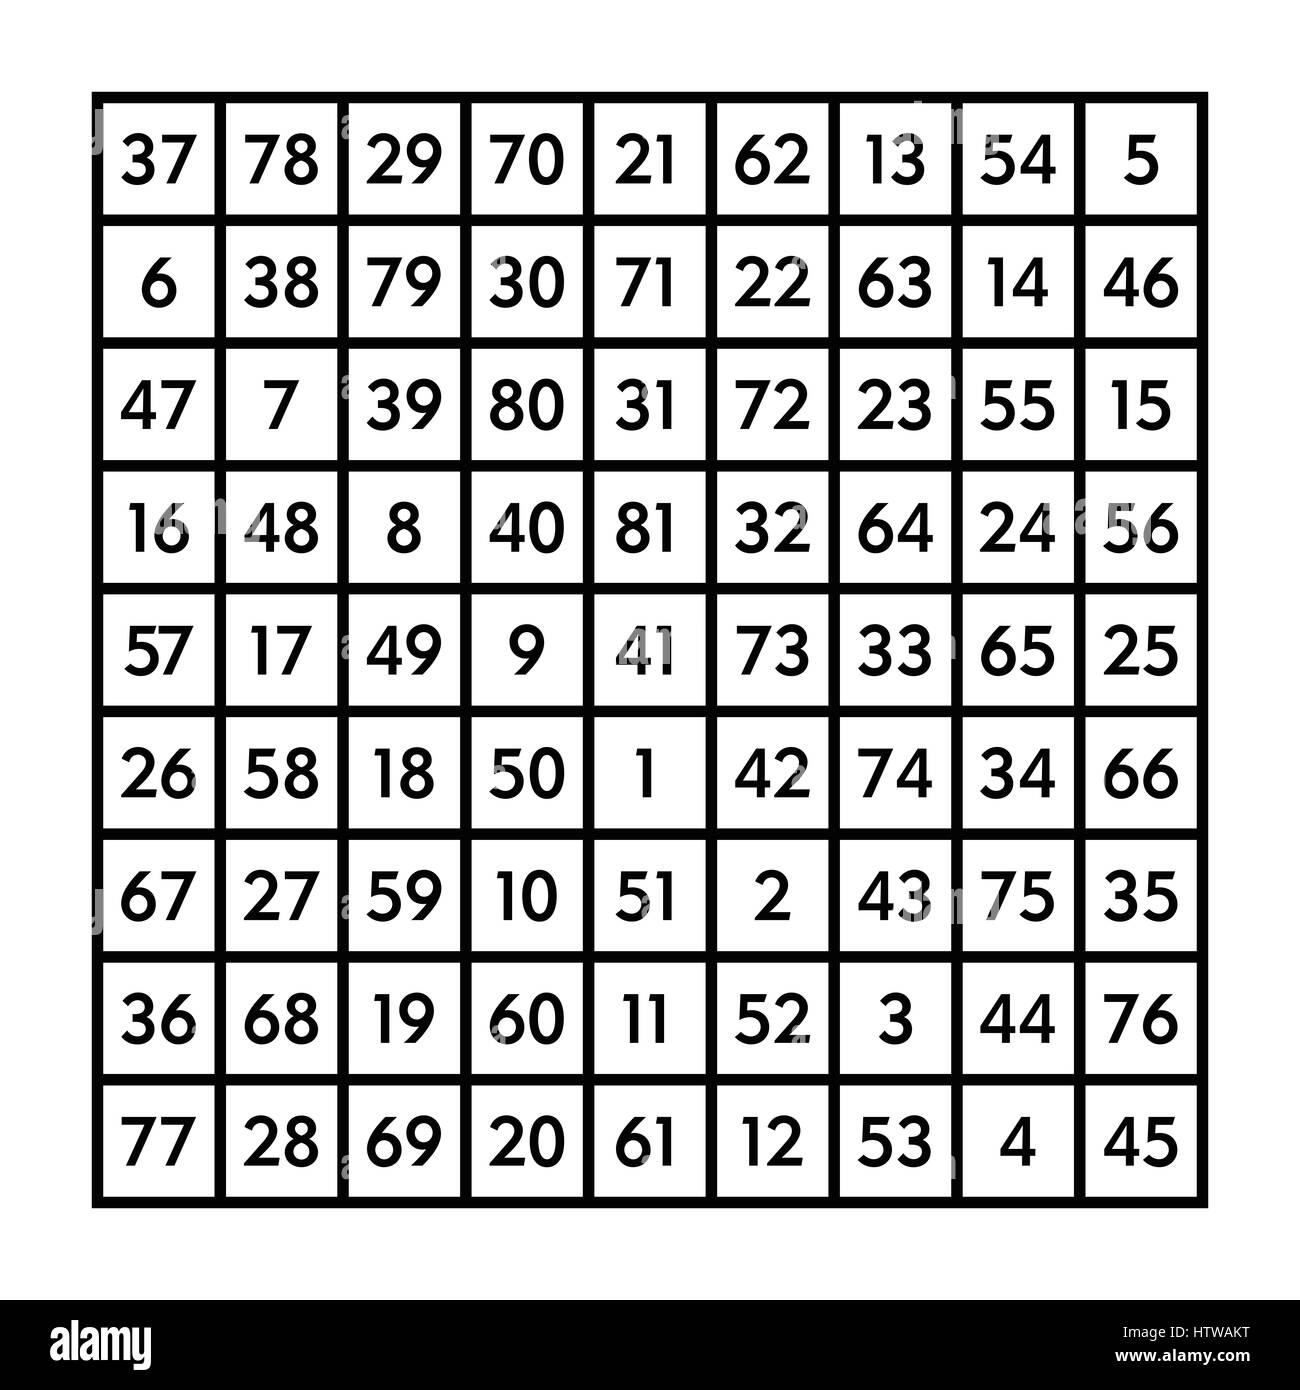 9x9 quadrato magico di ordine 9 e la luna astrologici con magic costante 369. La somma dei numeri in ogni riga, una colonna o una diagonale è sempre 369. Foto Stock